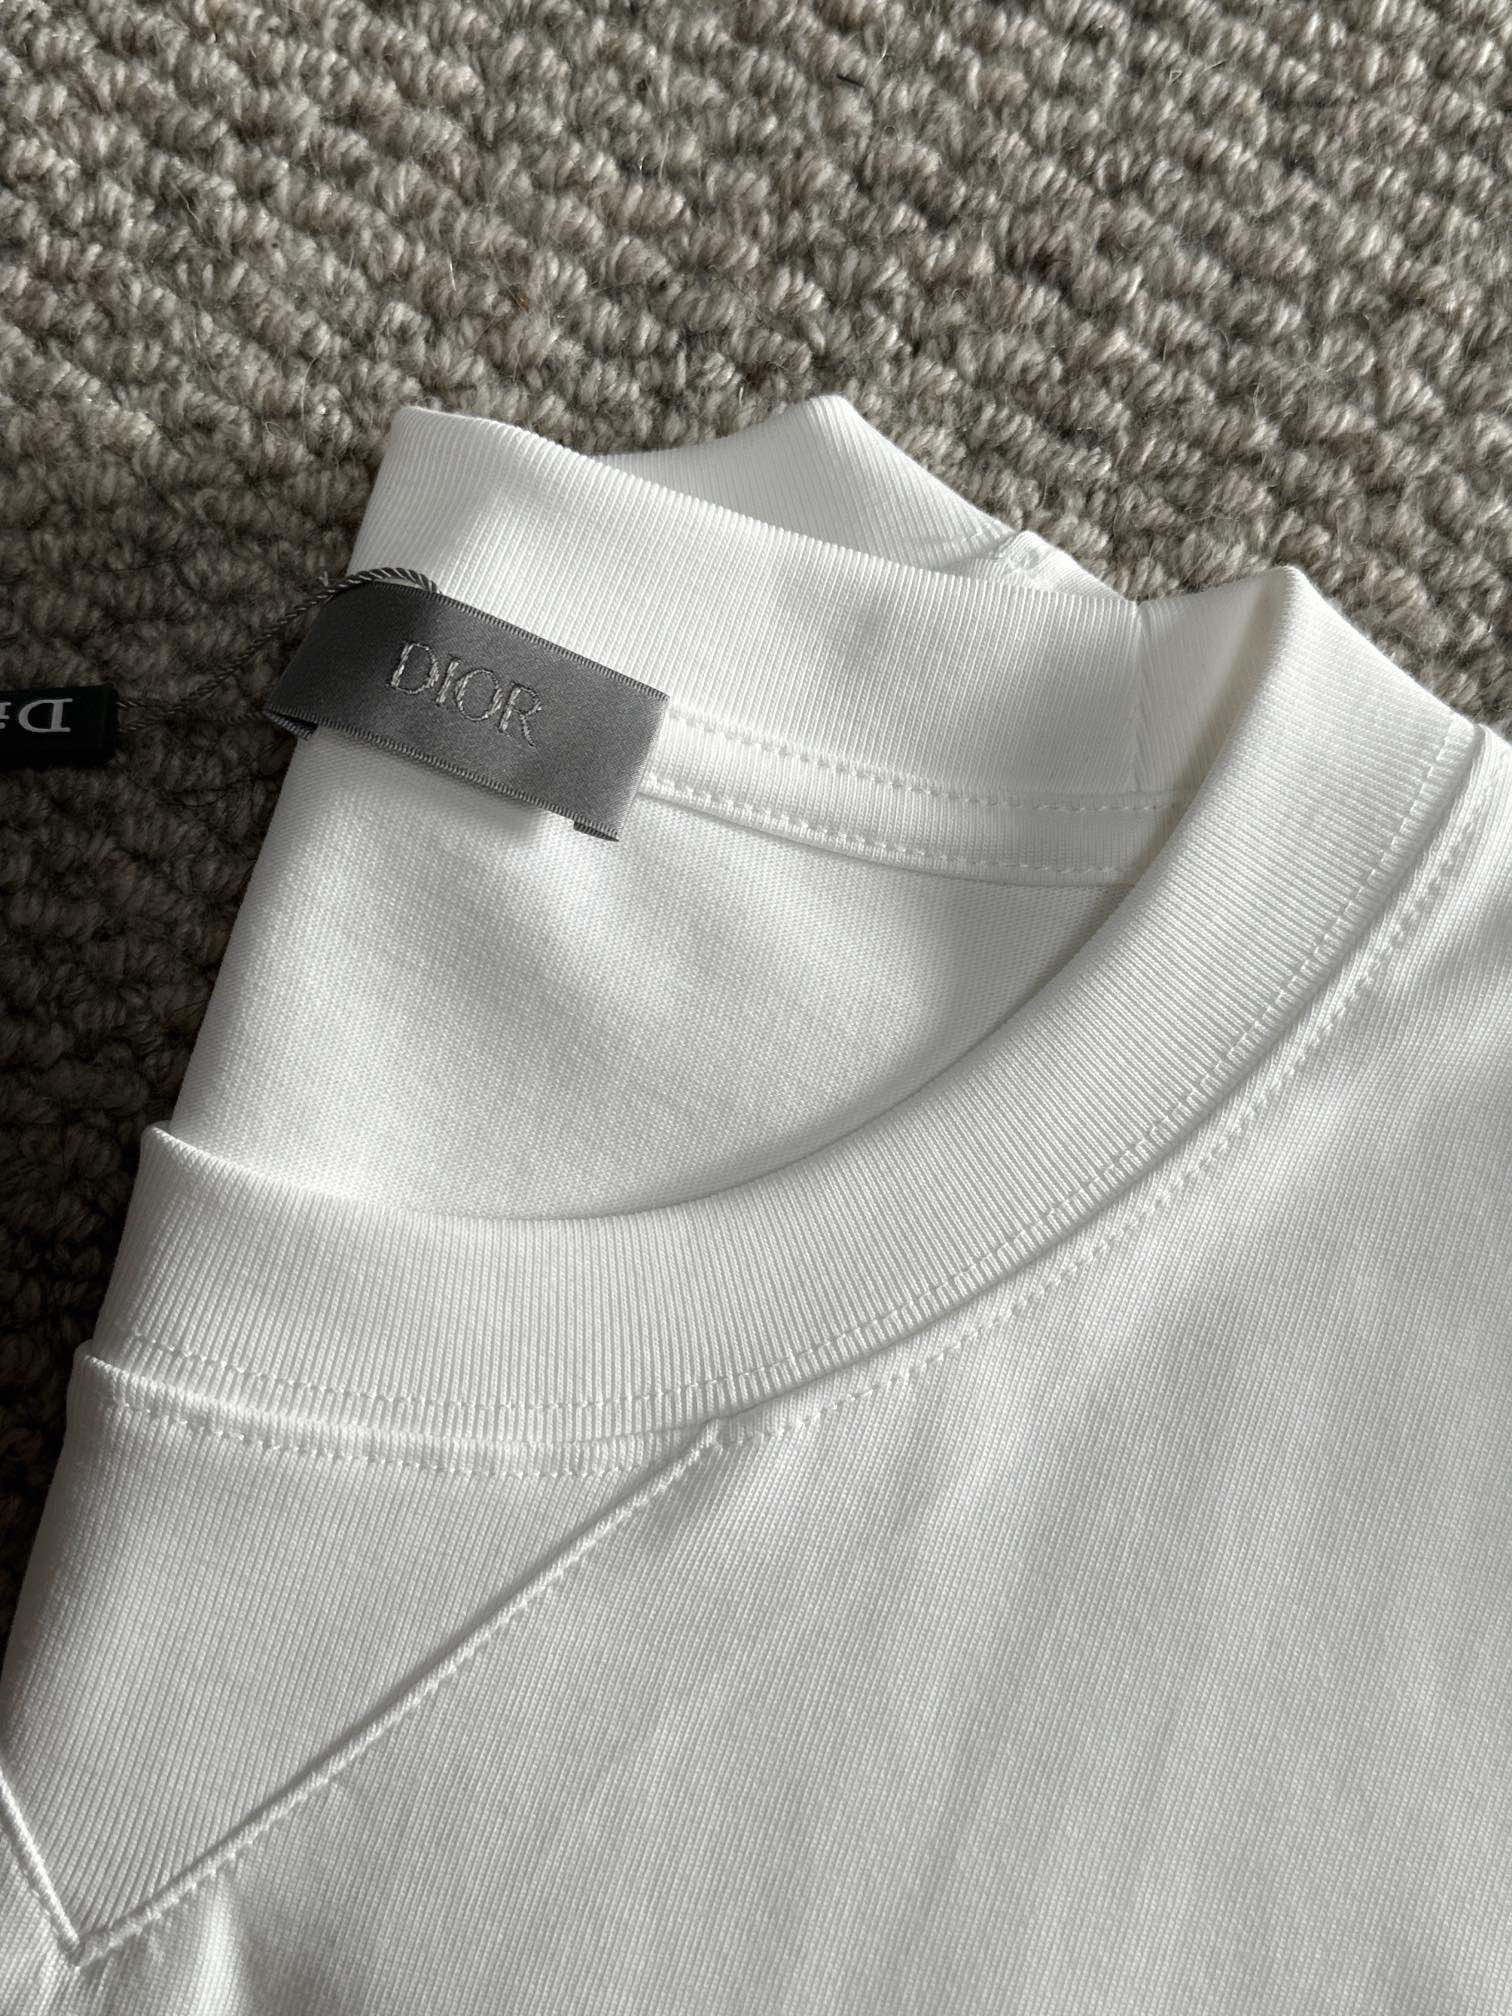 dior ステューシー tシャツスーパーコピー 短袖 爆買い品質保証 トップス 純綿 シンプル 春新販売 男女兼用 ホワイト_6